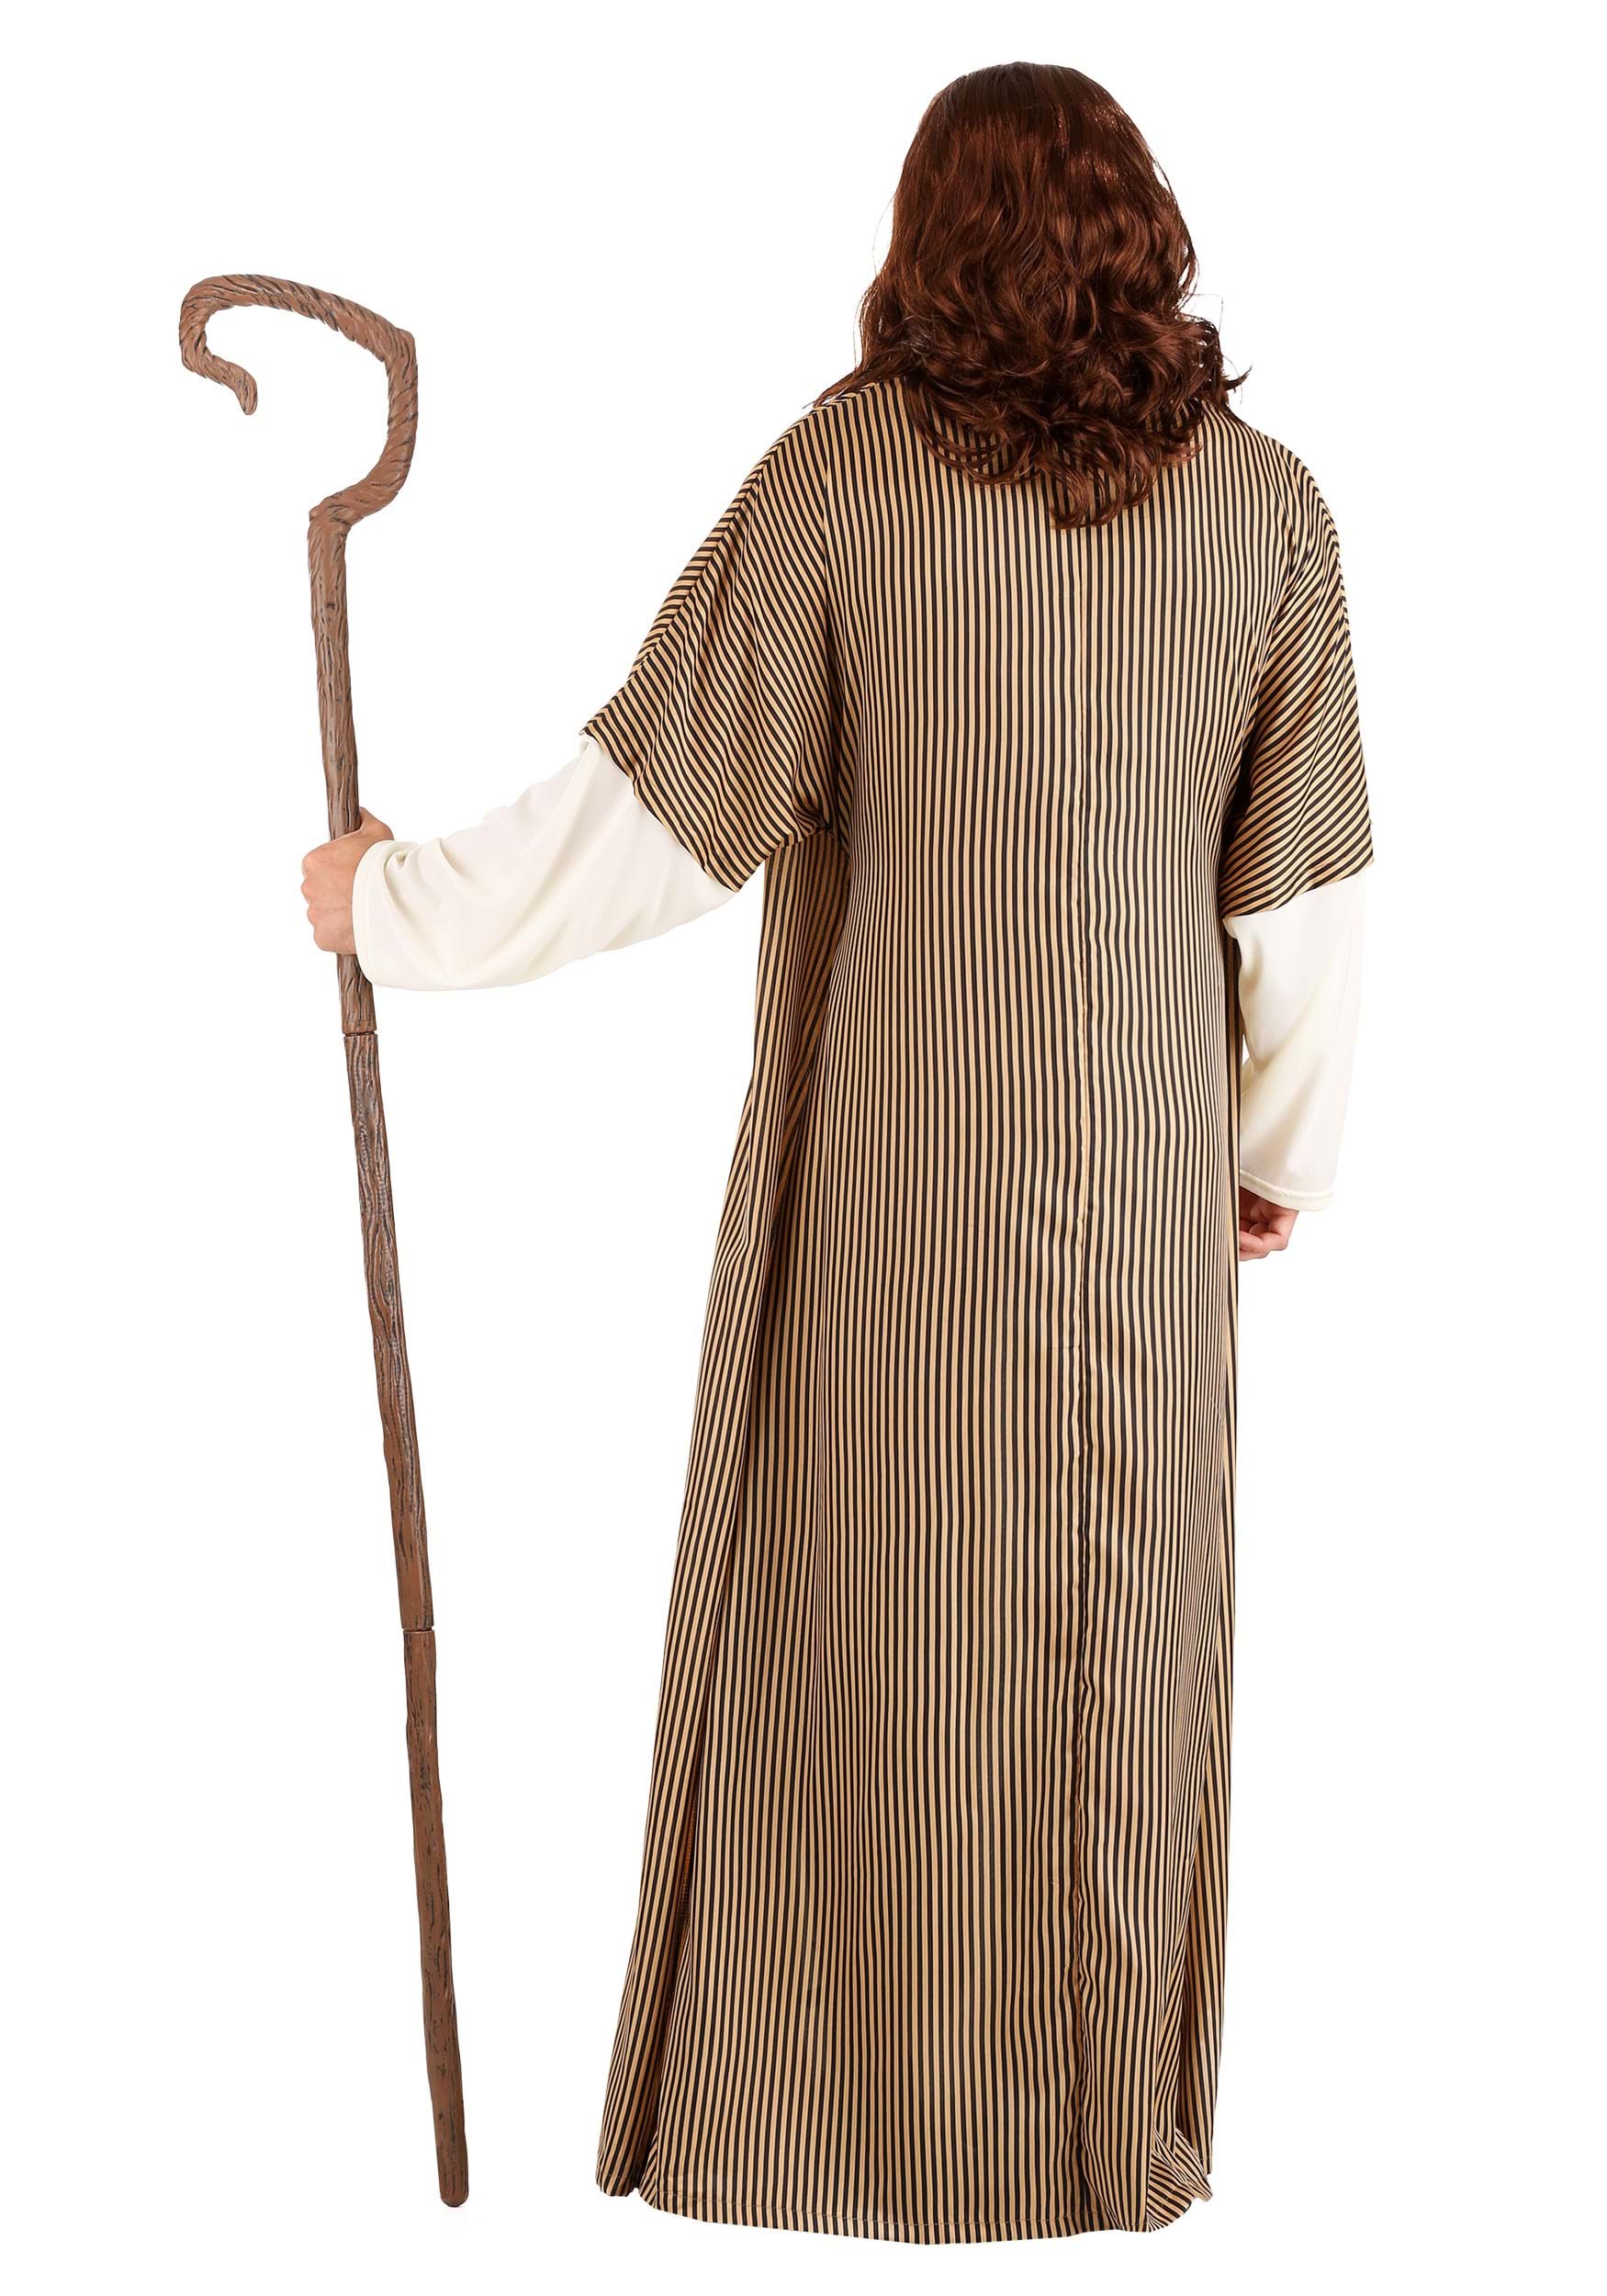 Nativity Joseph Costume For Men